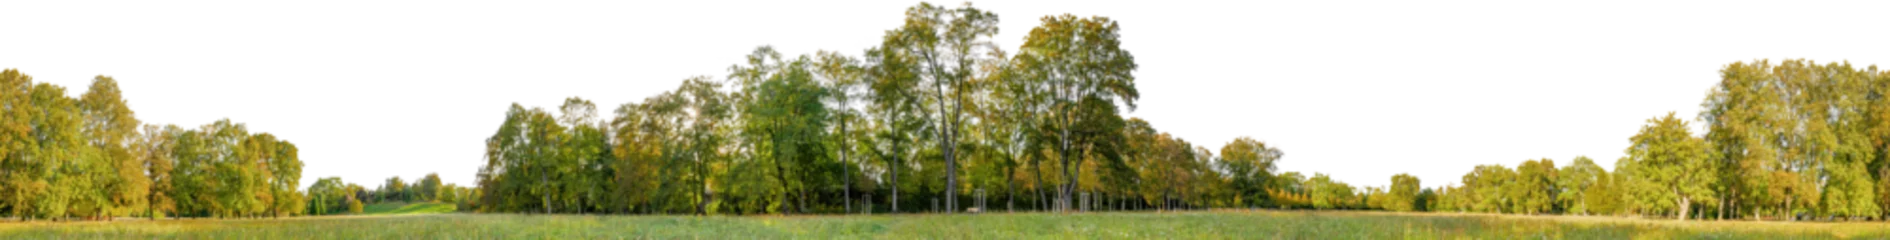 Foto auf Acrylglas tree line trees autumn xl horizontal seamless arch viz cutout © Mathias Weil